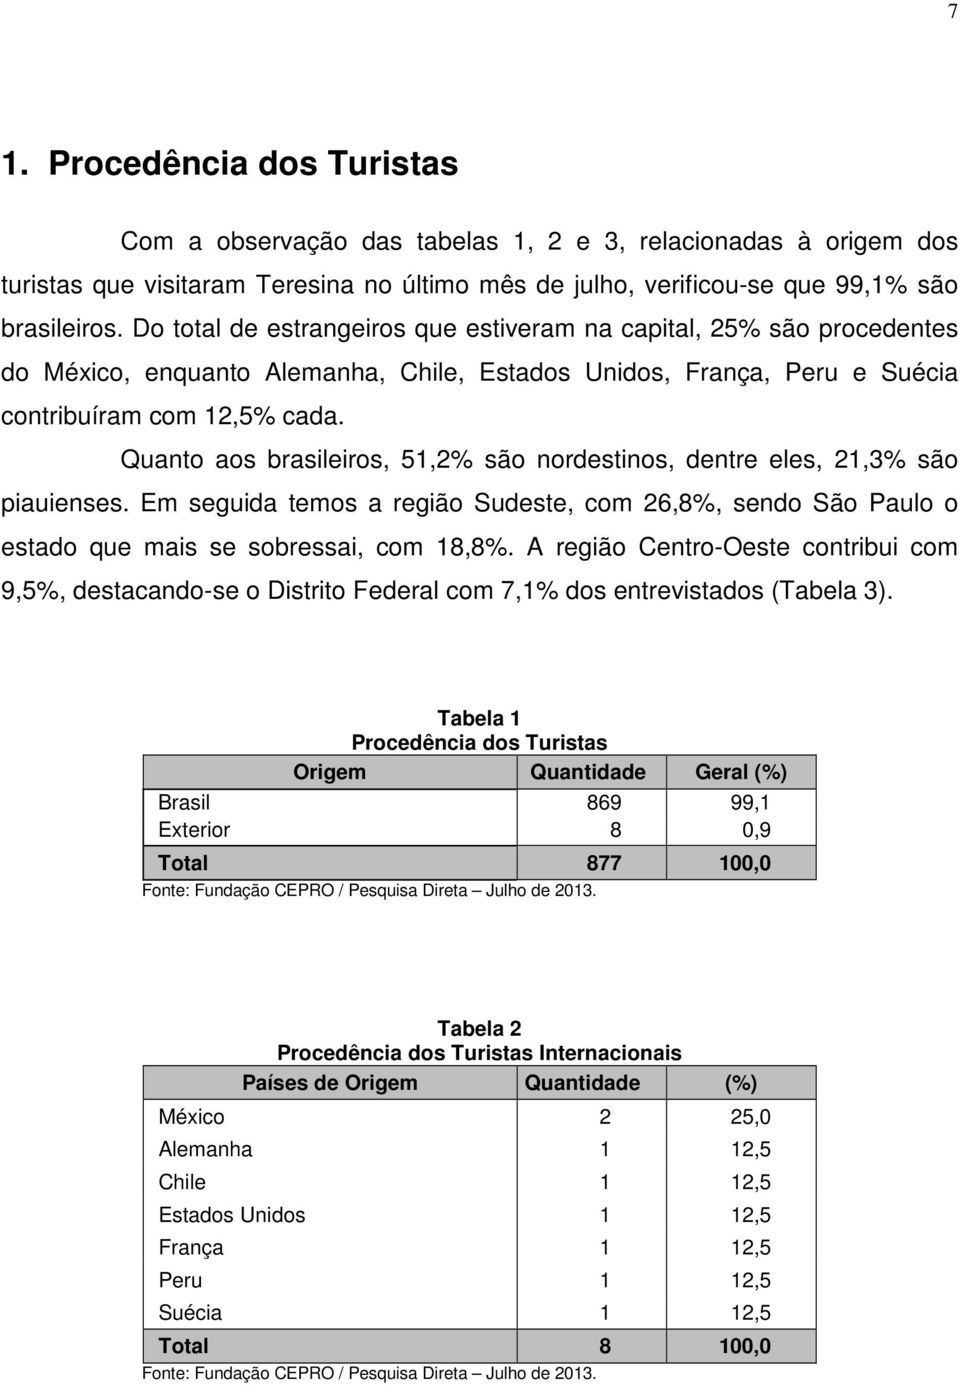 Quanto aos brasileiros, 51,2% são nordestinos, dentre eles, 21,3% são piauienses. Em seguida temos a região Sudeste, com 26,8%, sendo São Paulo o estado que mais se sobressai, com 18,8%.